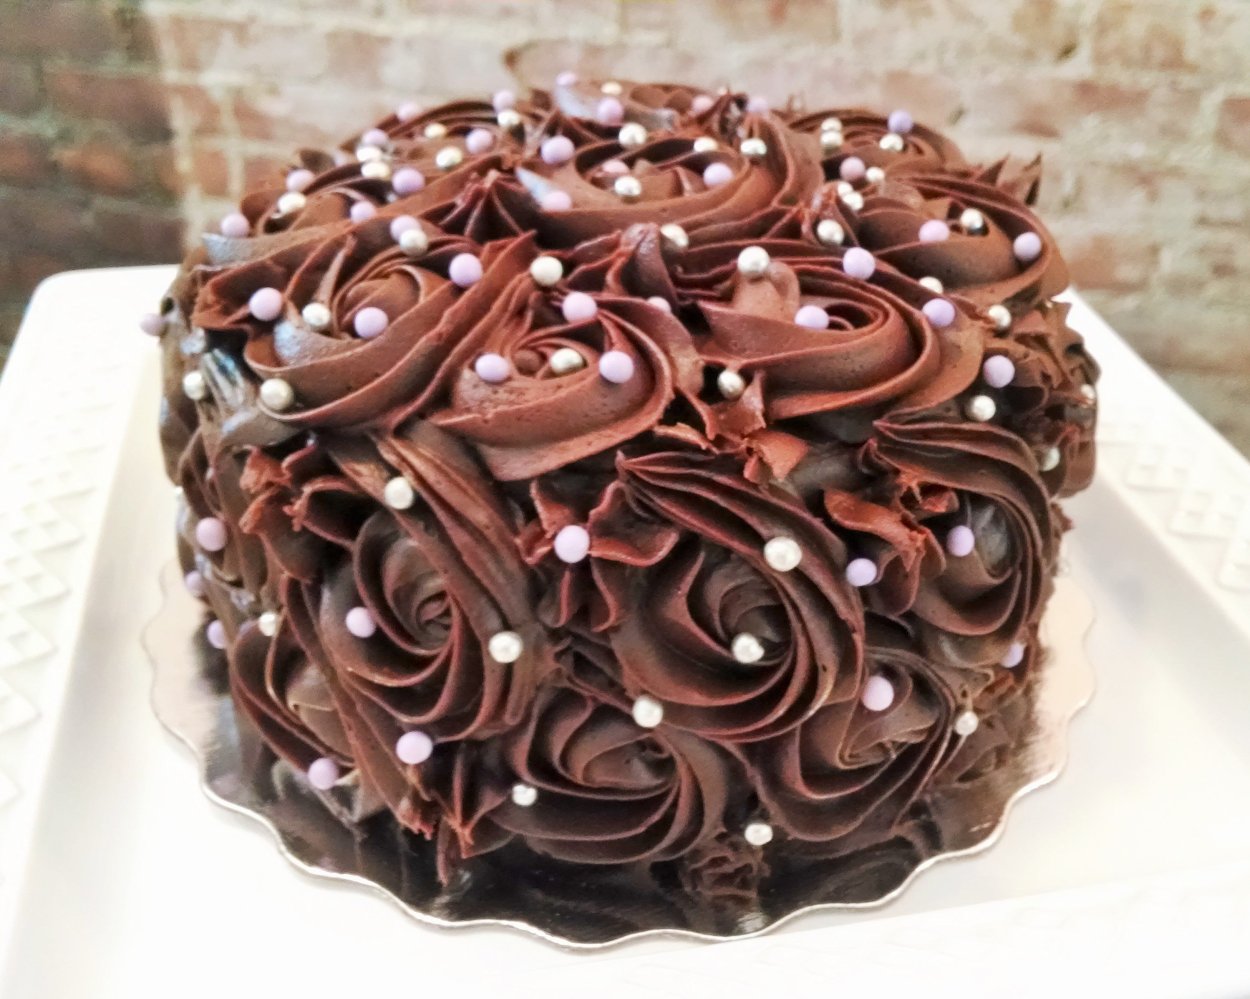 Шоколадный торт украшенный розами